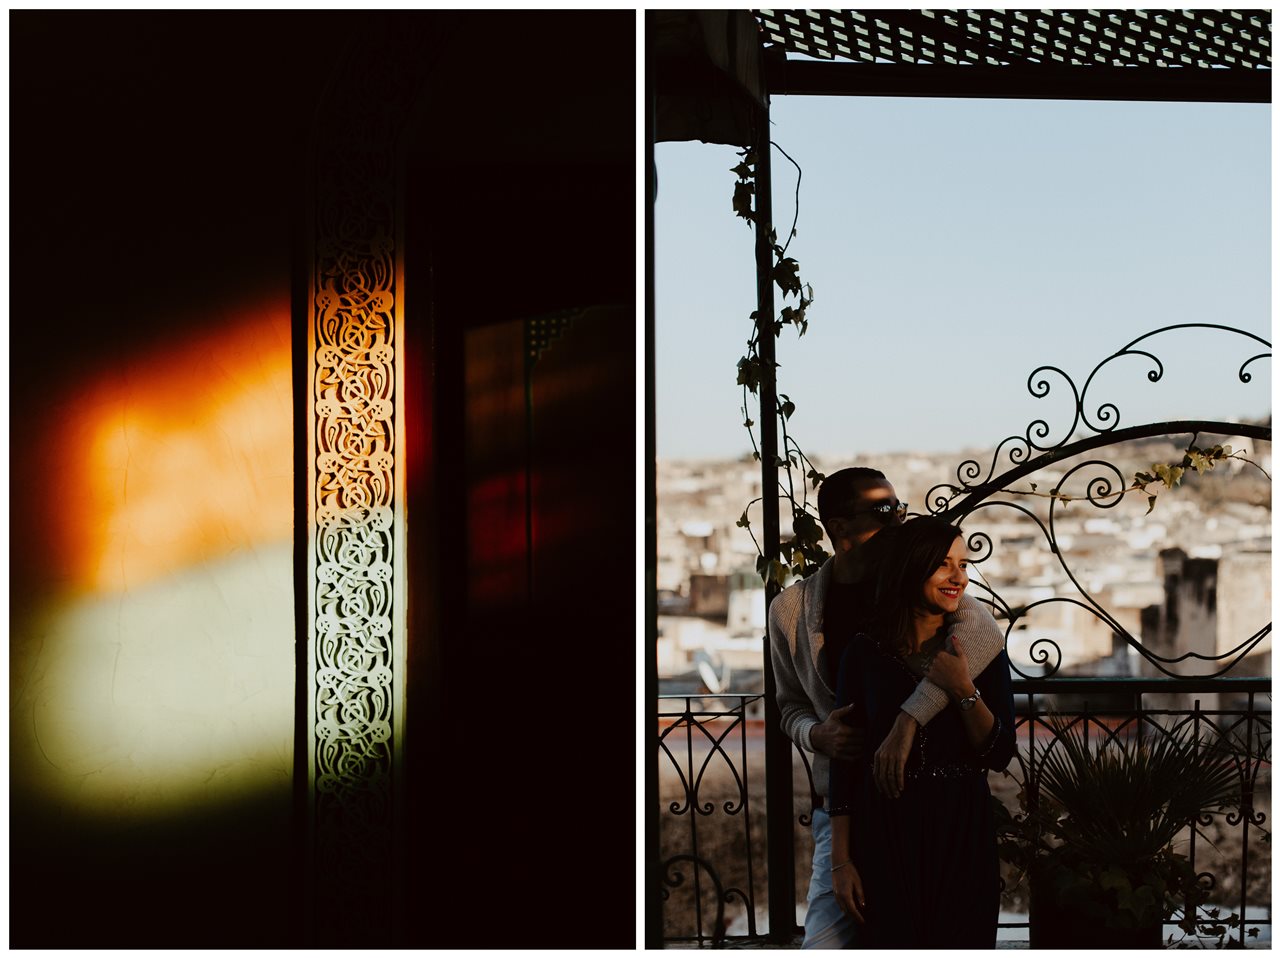 séance couple maroc fès mariés ombre et lumière toit terasse détail lumières colorées mur